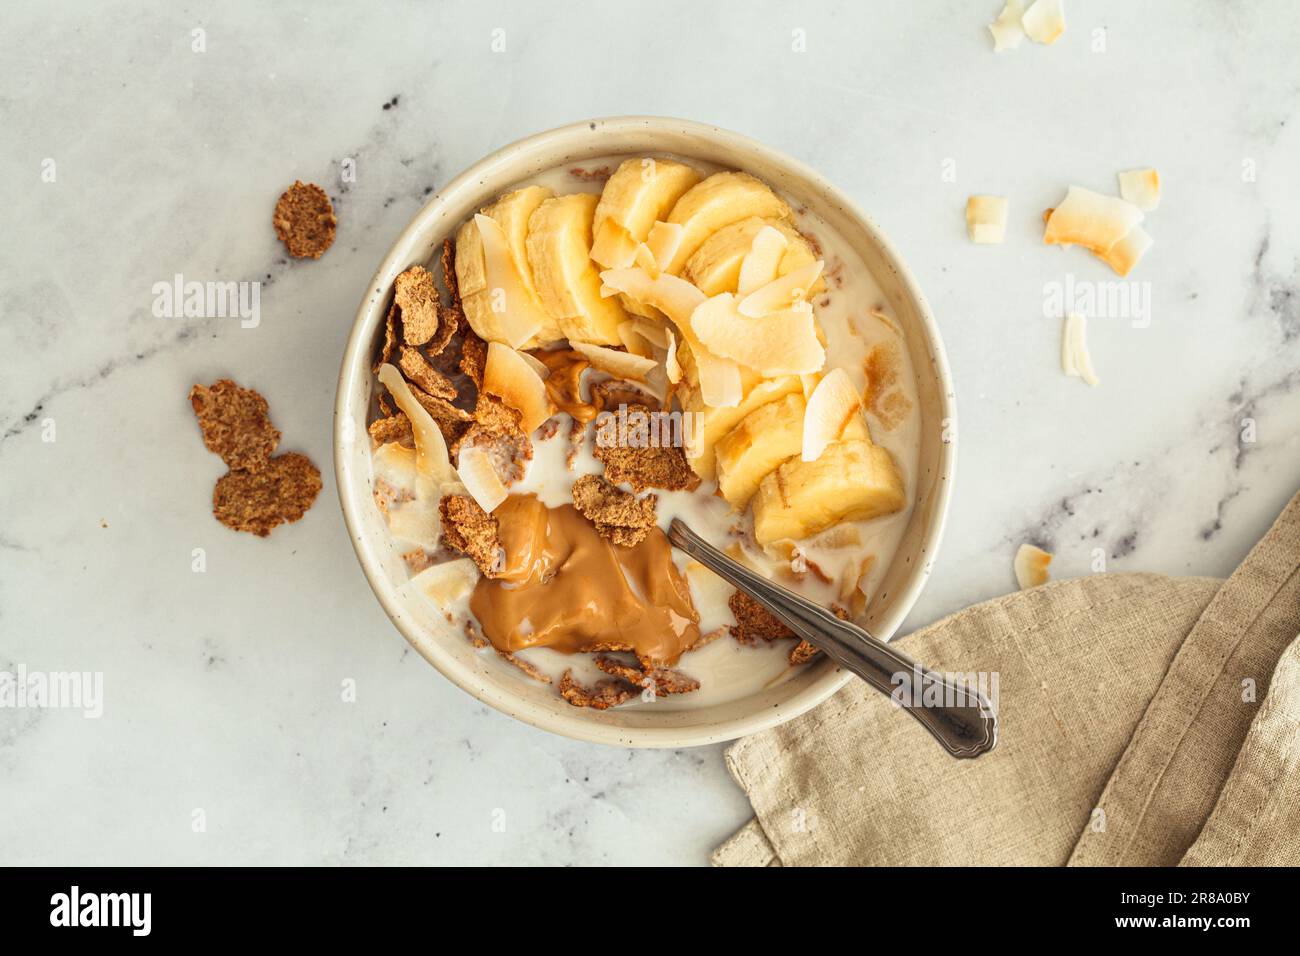 Vollkornflocken mit Banane, Kokosnusschips und Erdnussbutter in einer Schüssel, weißer Hintergrund, Draufsicht. Gesundes Frühstückskonzept. Stockfoto